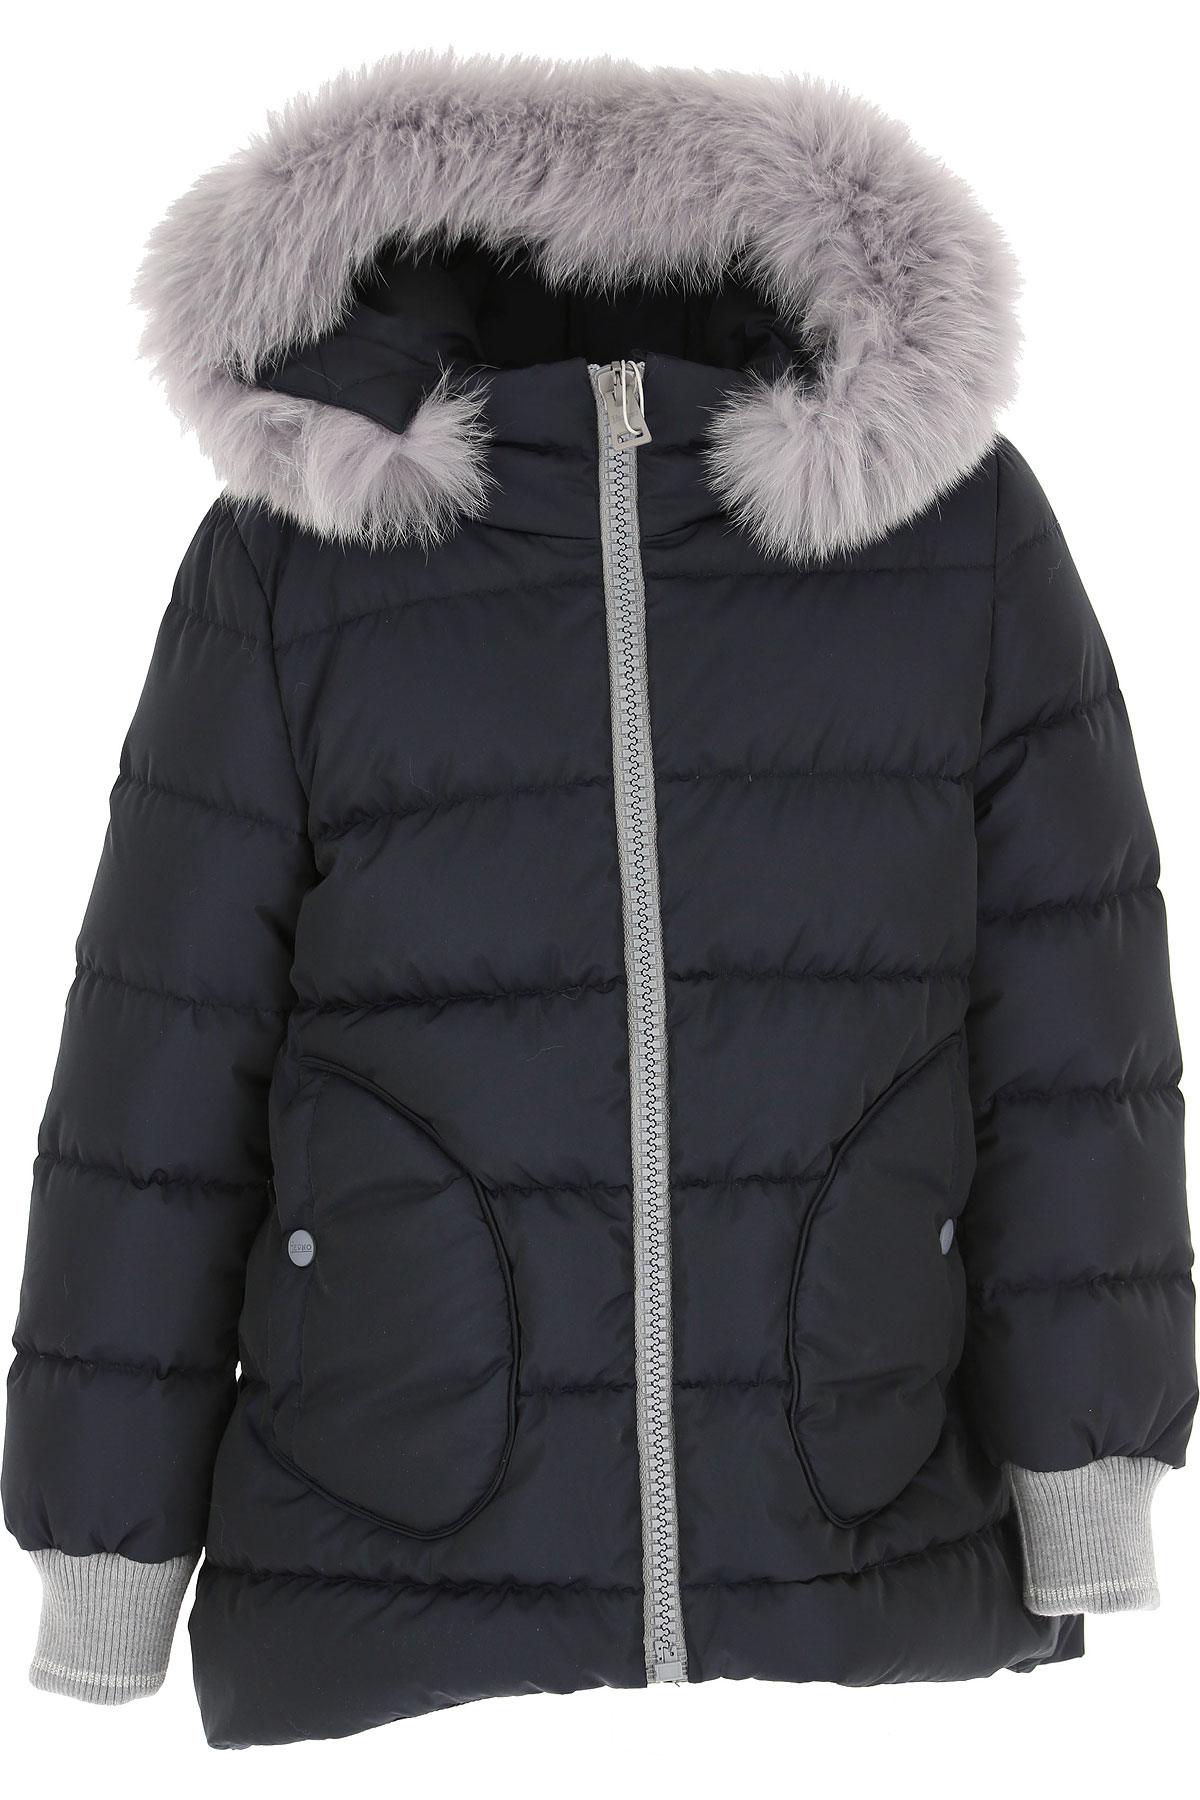 Herno Kinder Daunen Jacke für Mädchen, Soft Shell Ski Jacken Günstig im Sale, Blau, Polyester, 2017, 10Y 12Y